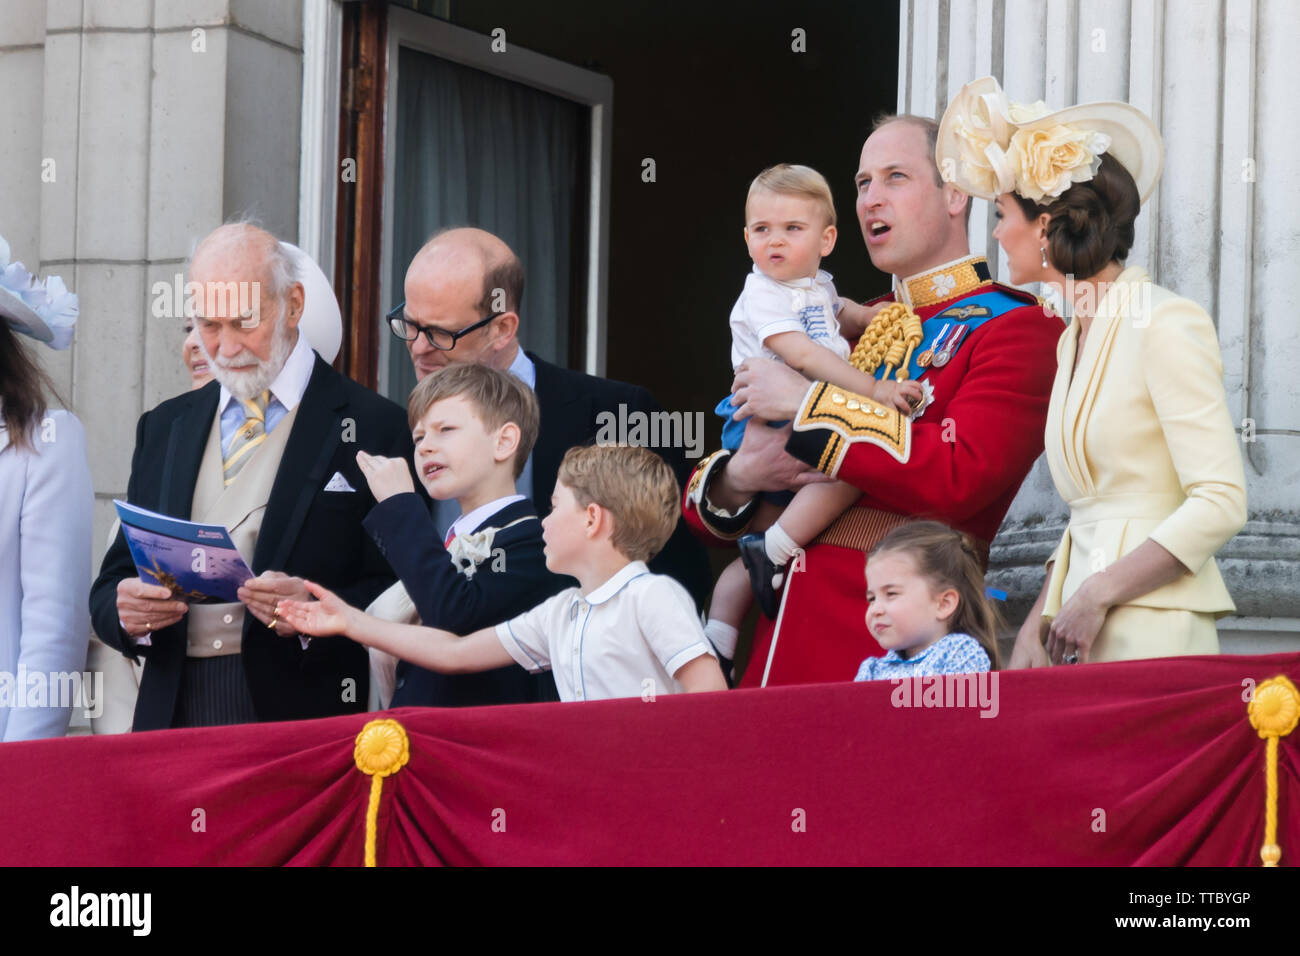 5 Jahre alte Prinz Georg von Cambridge packt die RAF flypast Broschüre aus Prinz Michael von Kent, Hände. Buckingham Palace Balkon, die Farbe Stockfoto